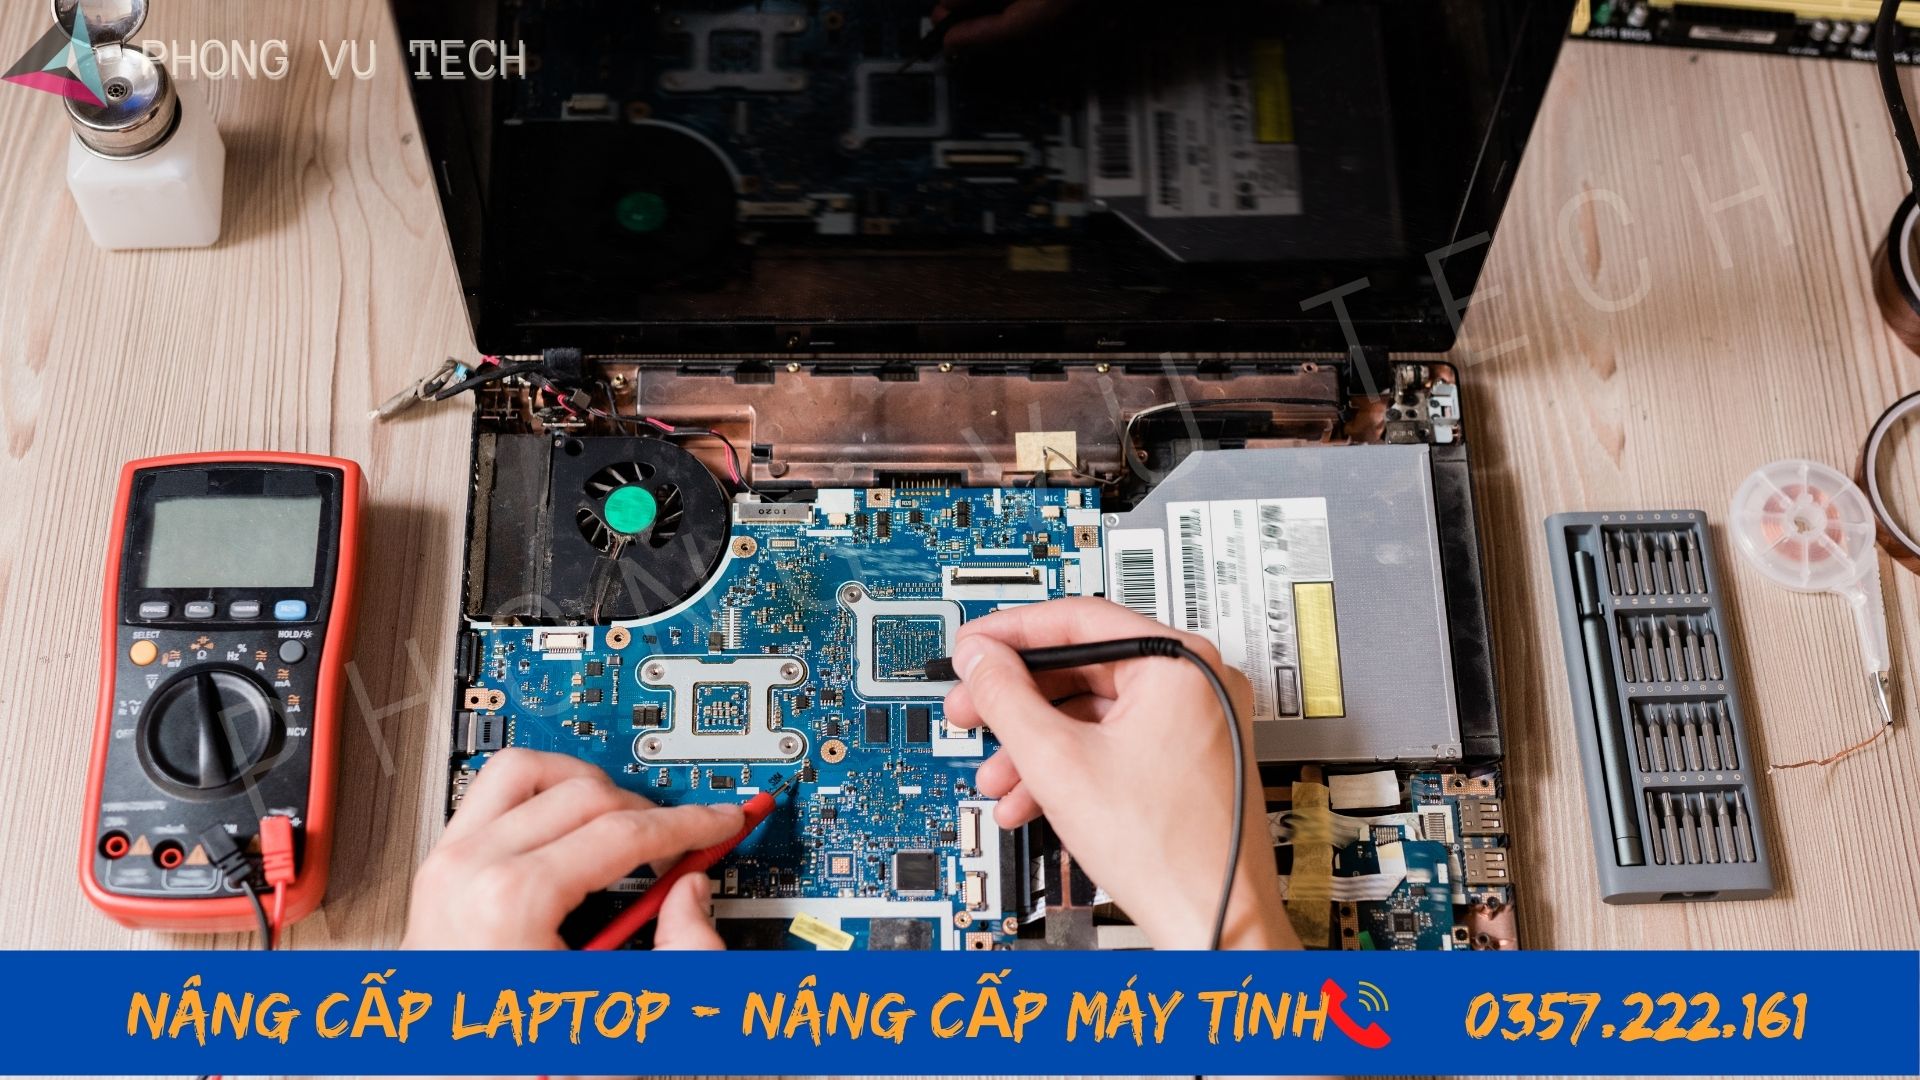 Nang Cap Laptop HCM